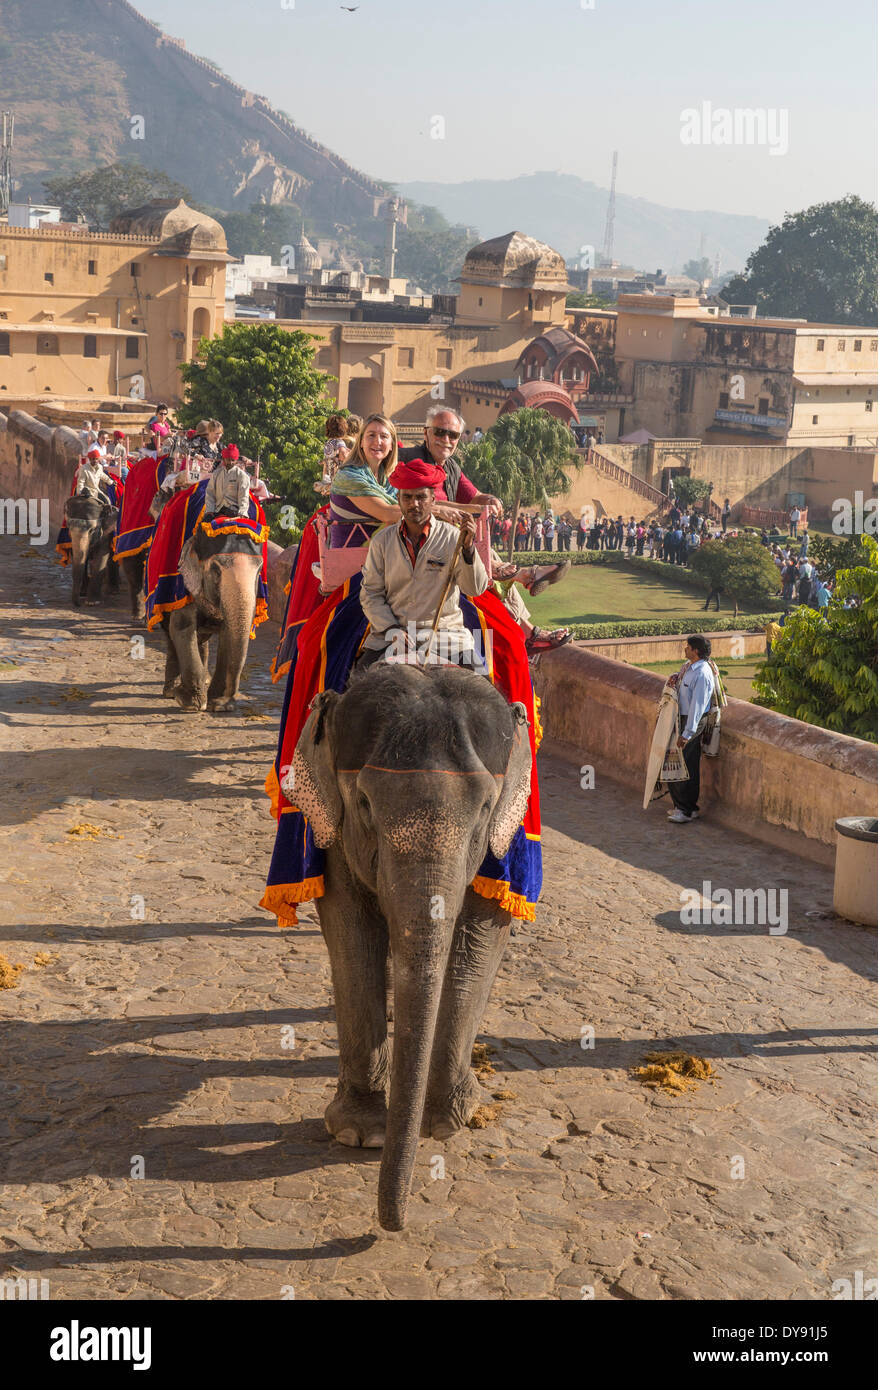 Tourists, ride, fort, Amber, elephant, Asia, India, elephant, Rajasthan, Amber, Jaipur, Stock Photo